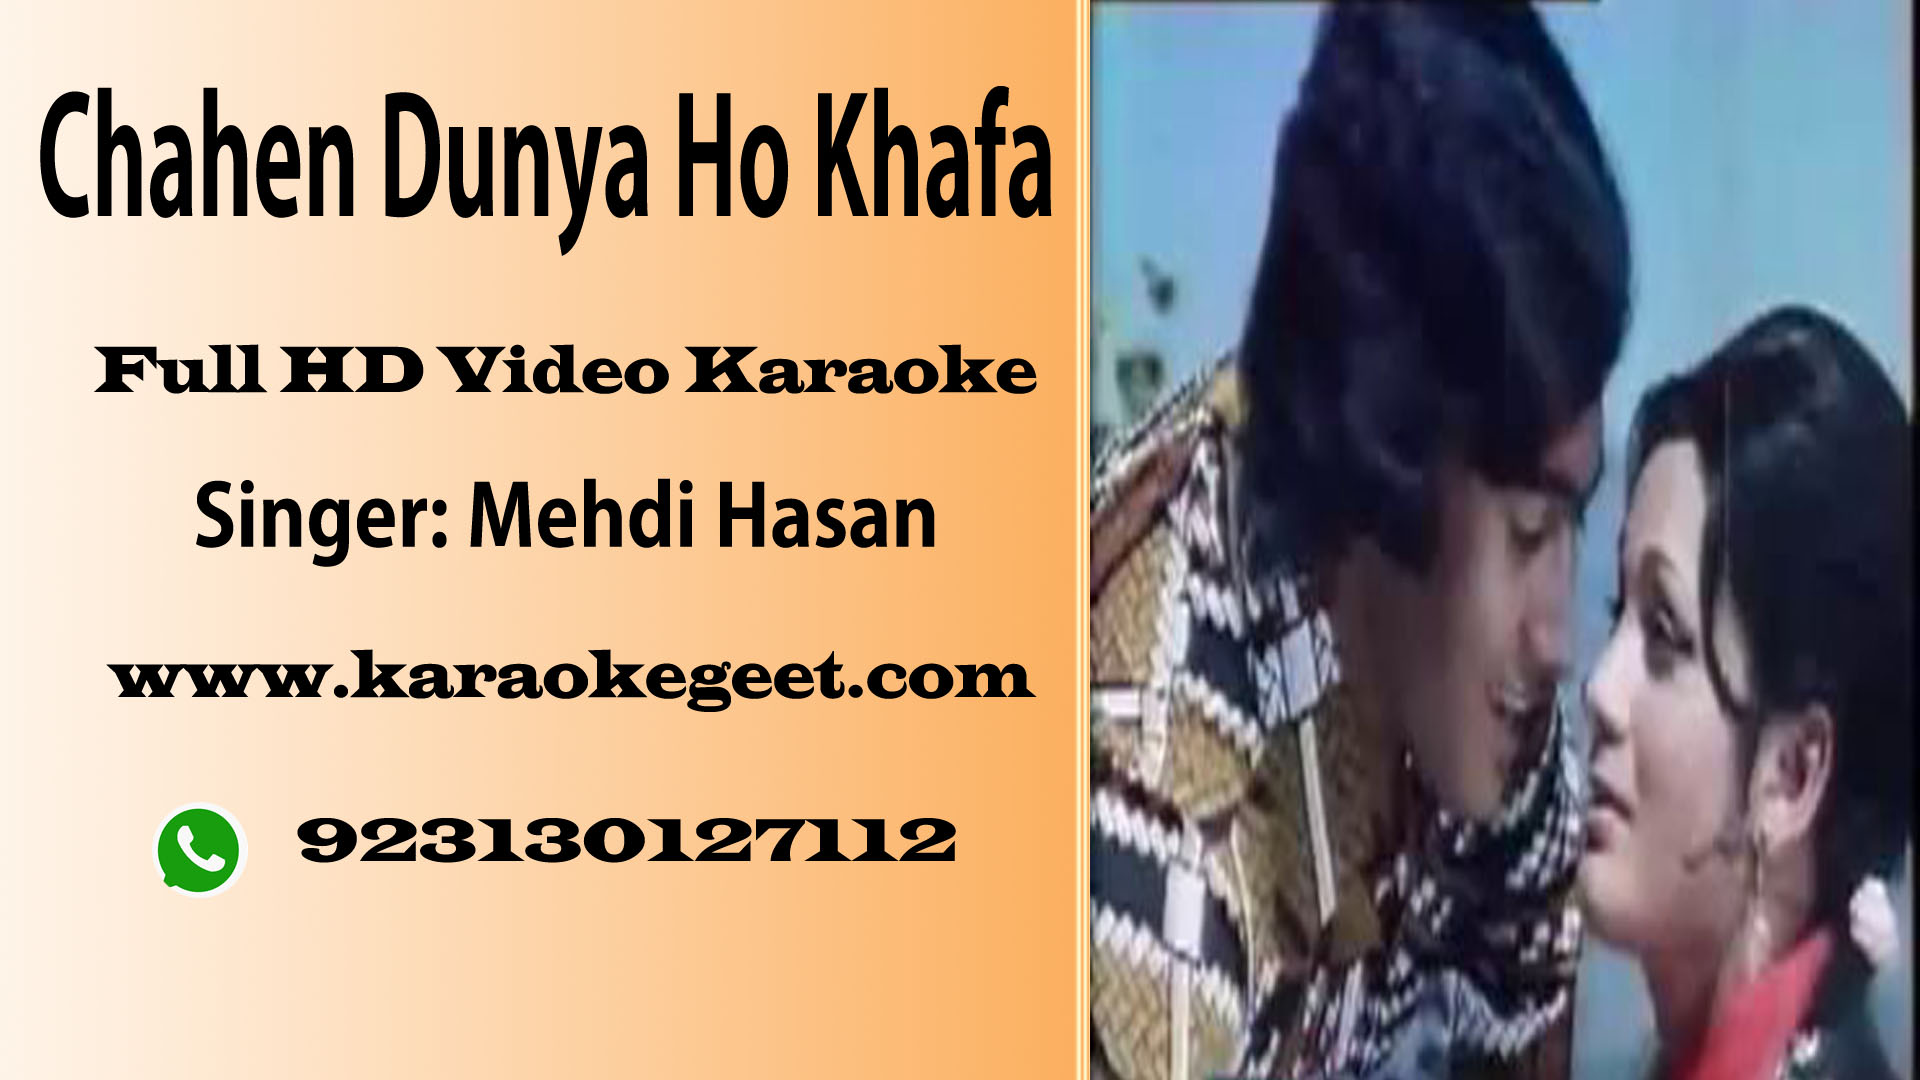 Chahen dunya ho khafa Video Karaoke